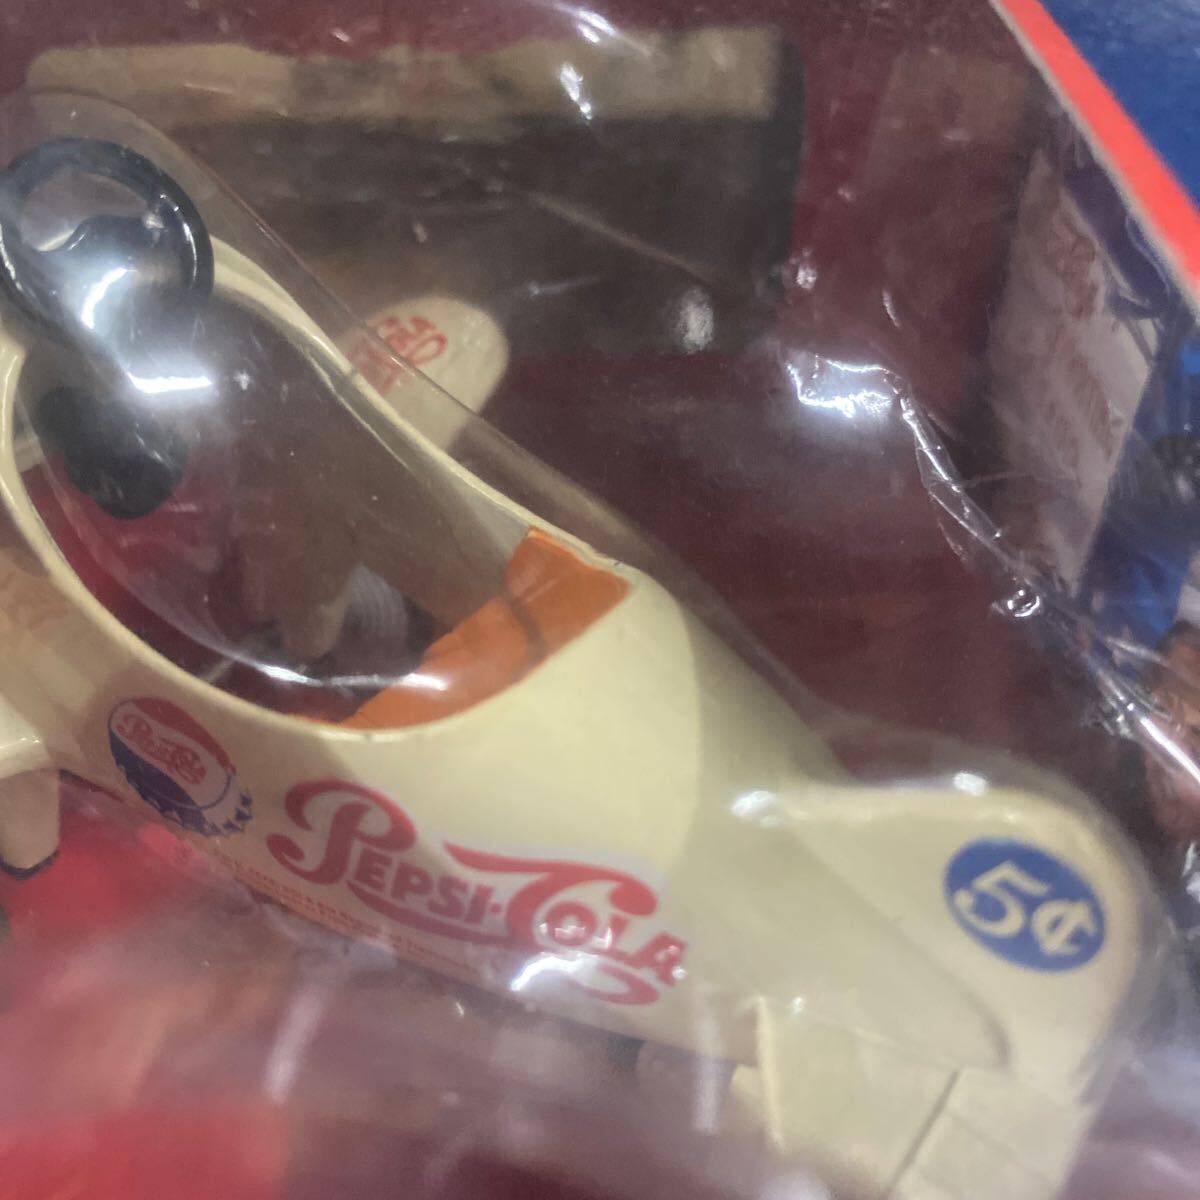  Pepsi самолет транспортное средство пара .. игрушка неиспользуемый товар товар 